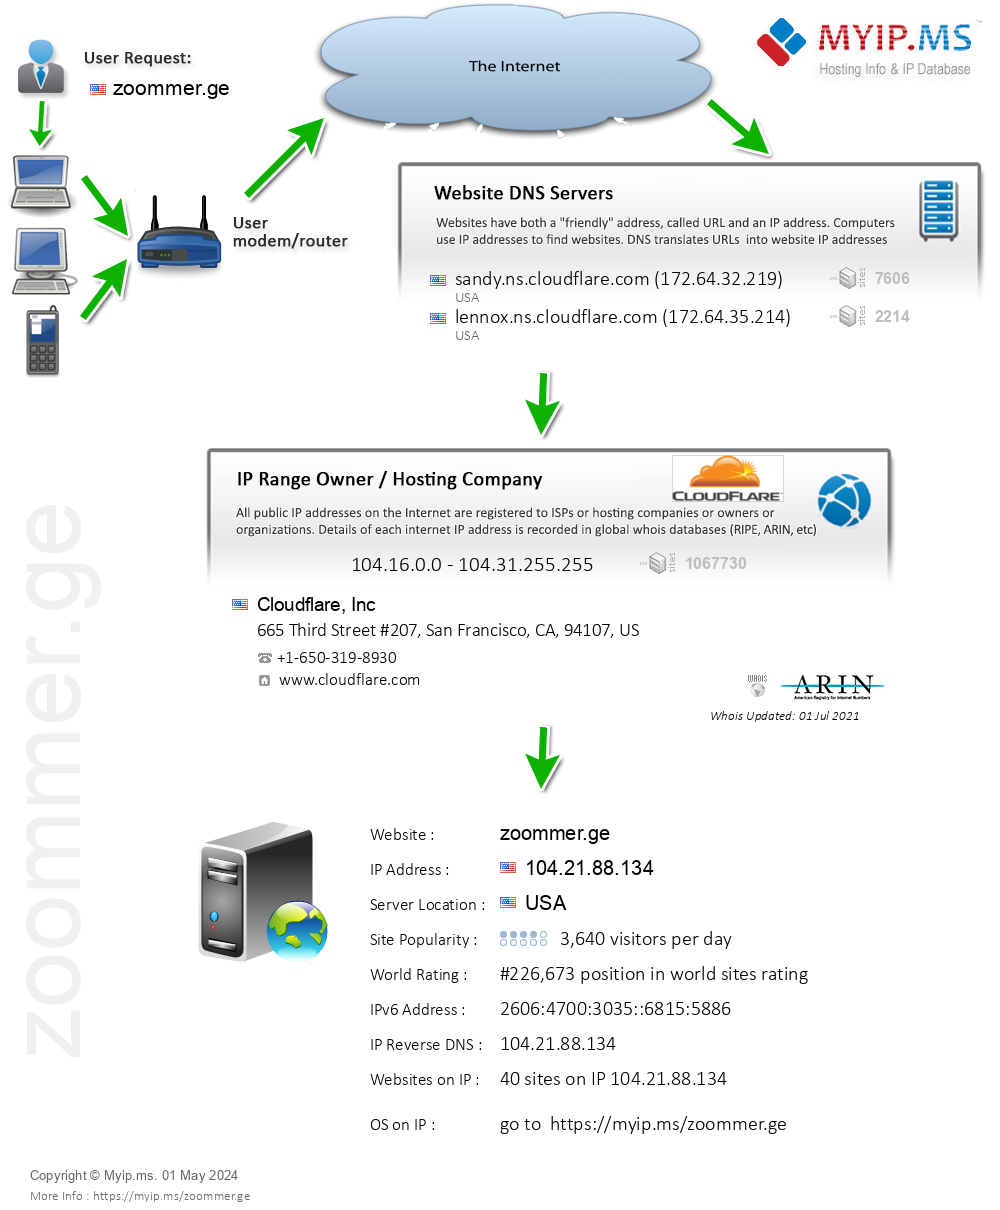 Zoommer.ge - Website Hosting Visual IP Diagram